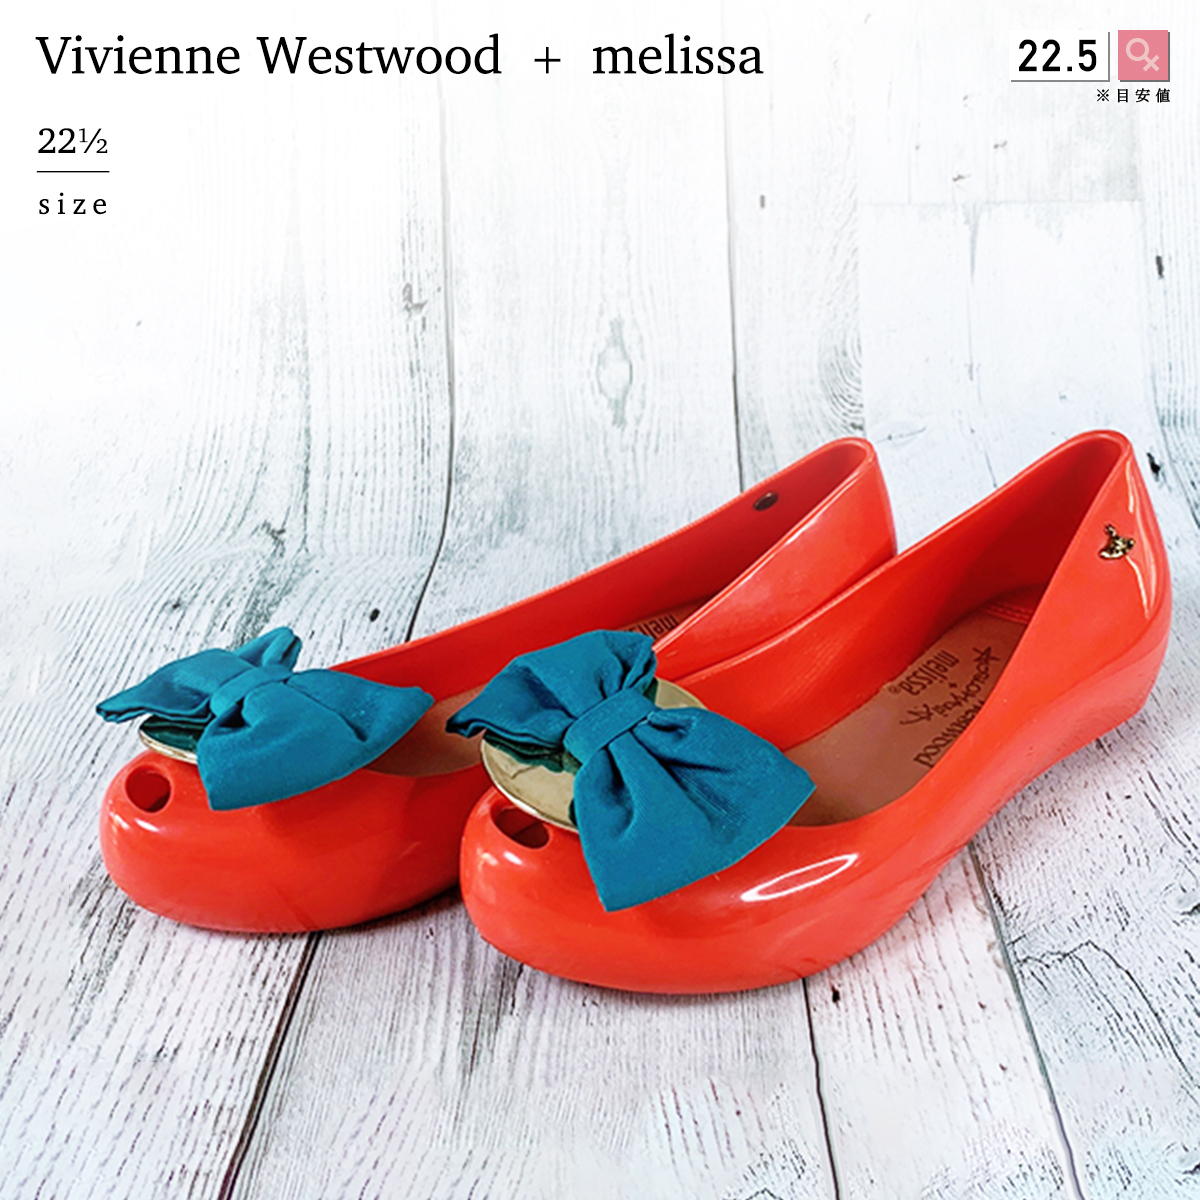 ヴィヴィアンウエストウッド + メリッサ 22.5cm 35.5 PVC エナメル 樹脂 フラット シューズ パンプス 赤 レッド オレンジ 靴  バレエ リボン